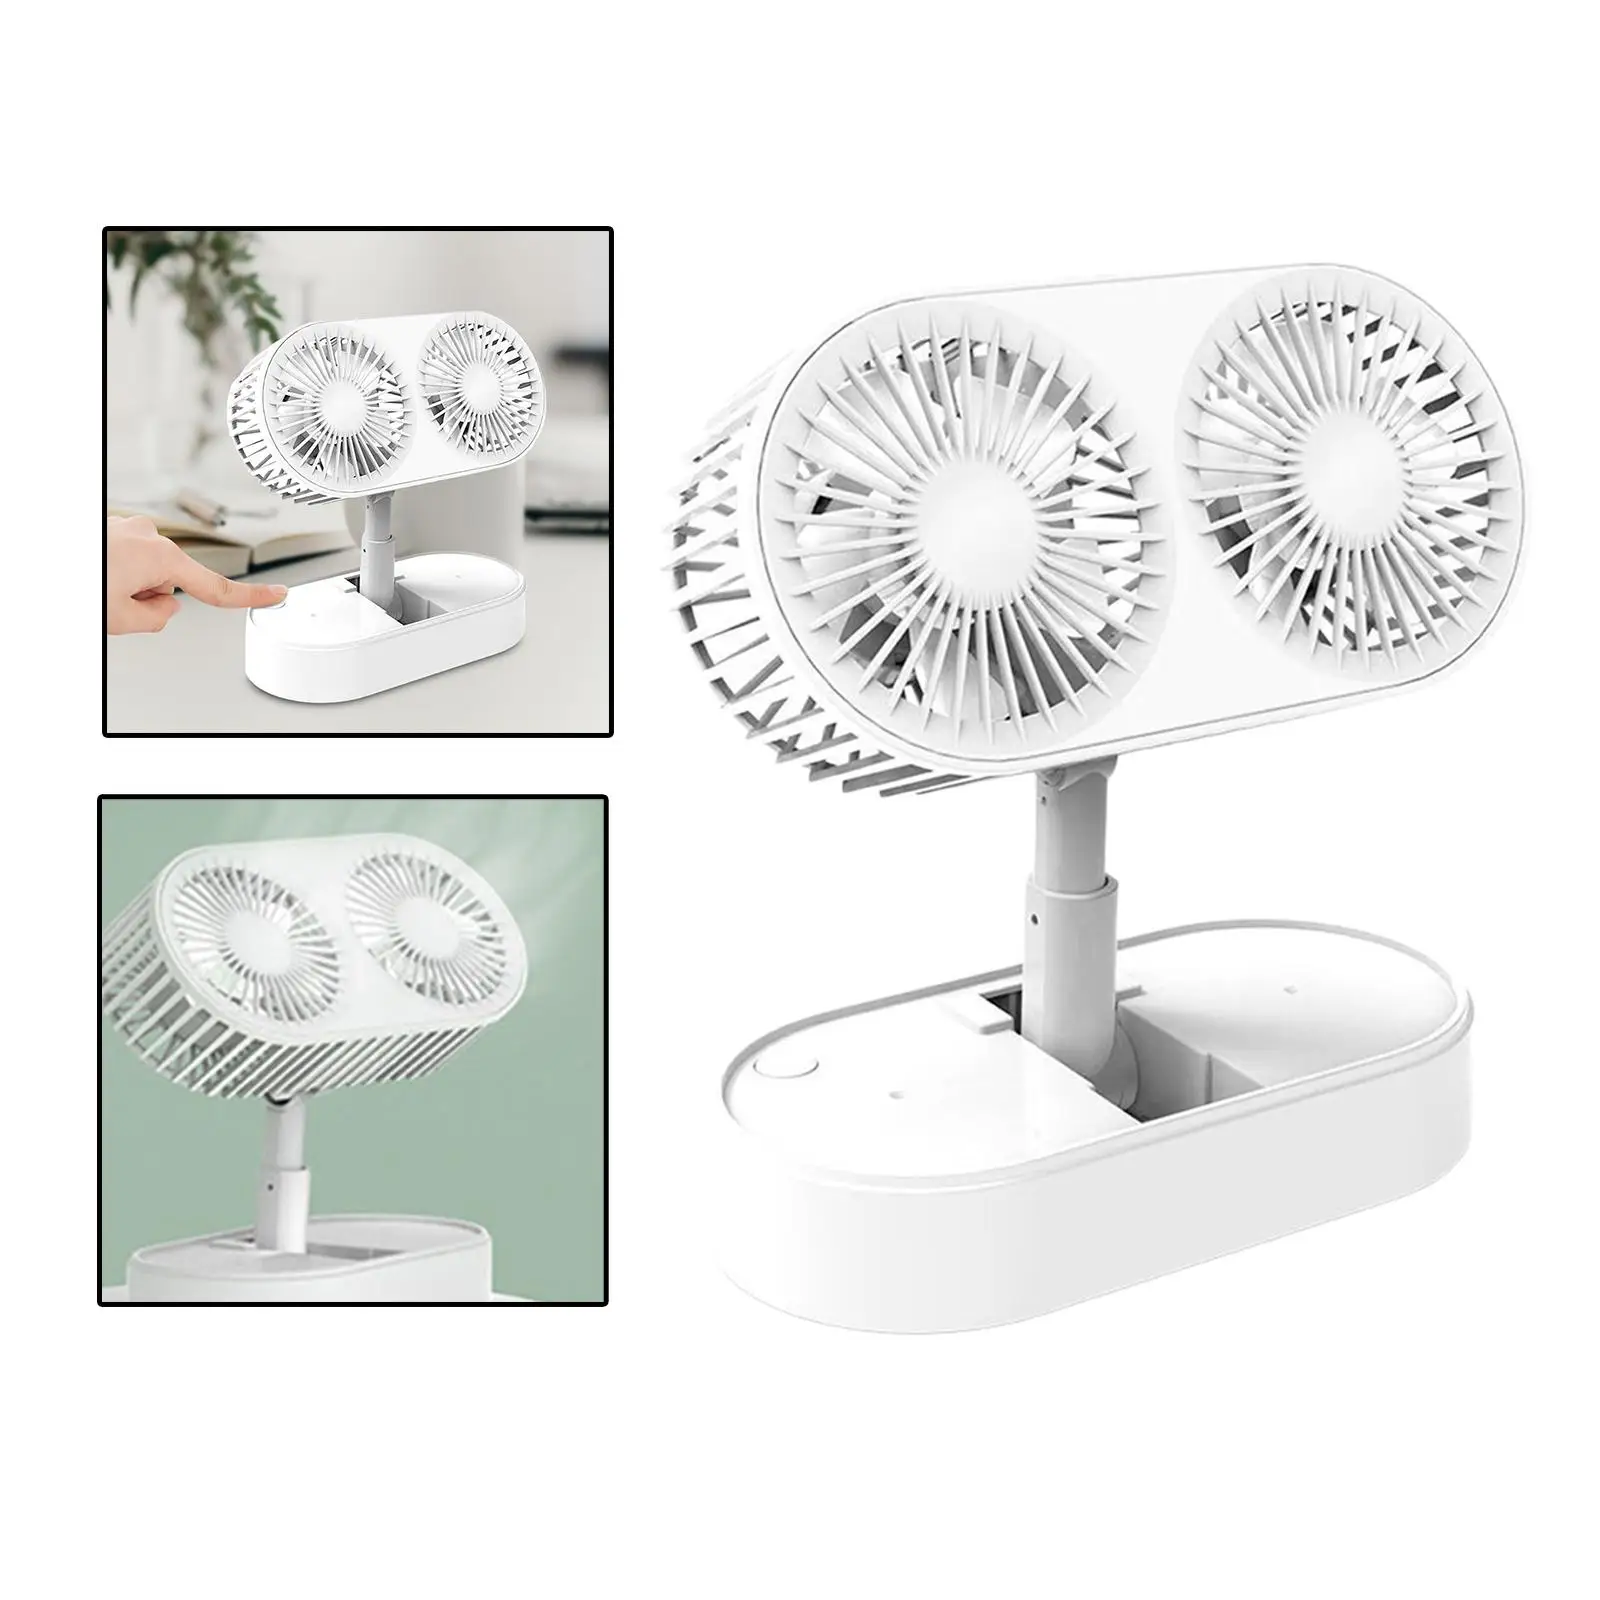 Folding Desktop Fan with Dual Fan 360 Degree Rotation Cooling Mini Desk Fan for Travel